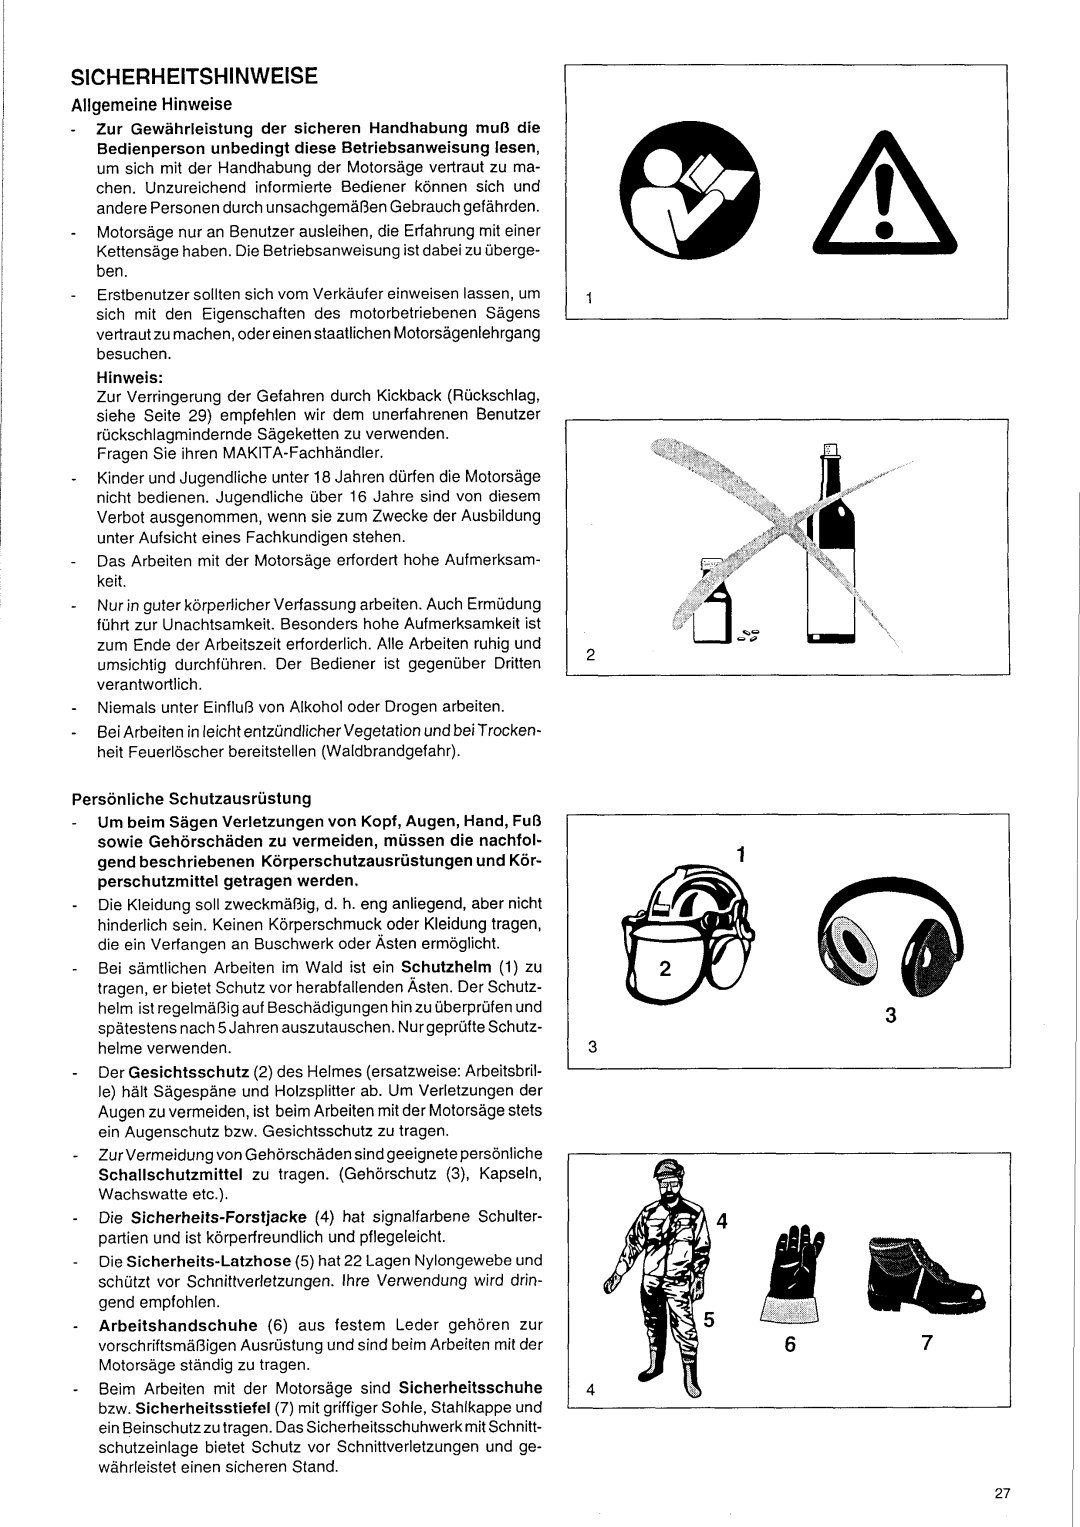 Makita DCS 9000 manual SICHERHElTSHlNWElSE, Allgemeine Hinweise, Personliche Schutzausrustung 